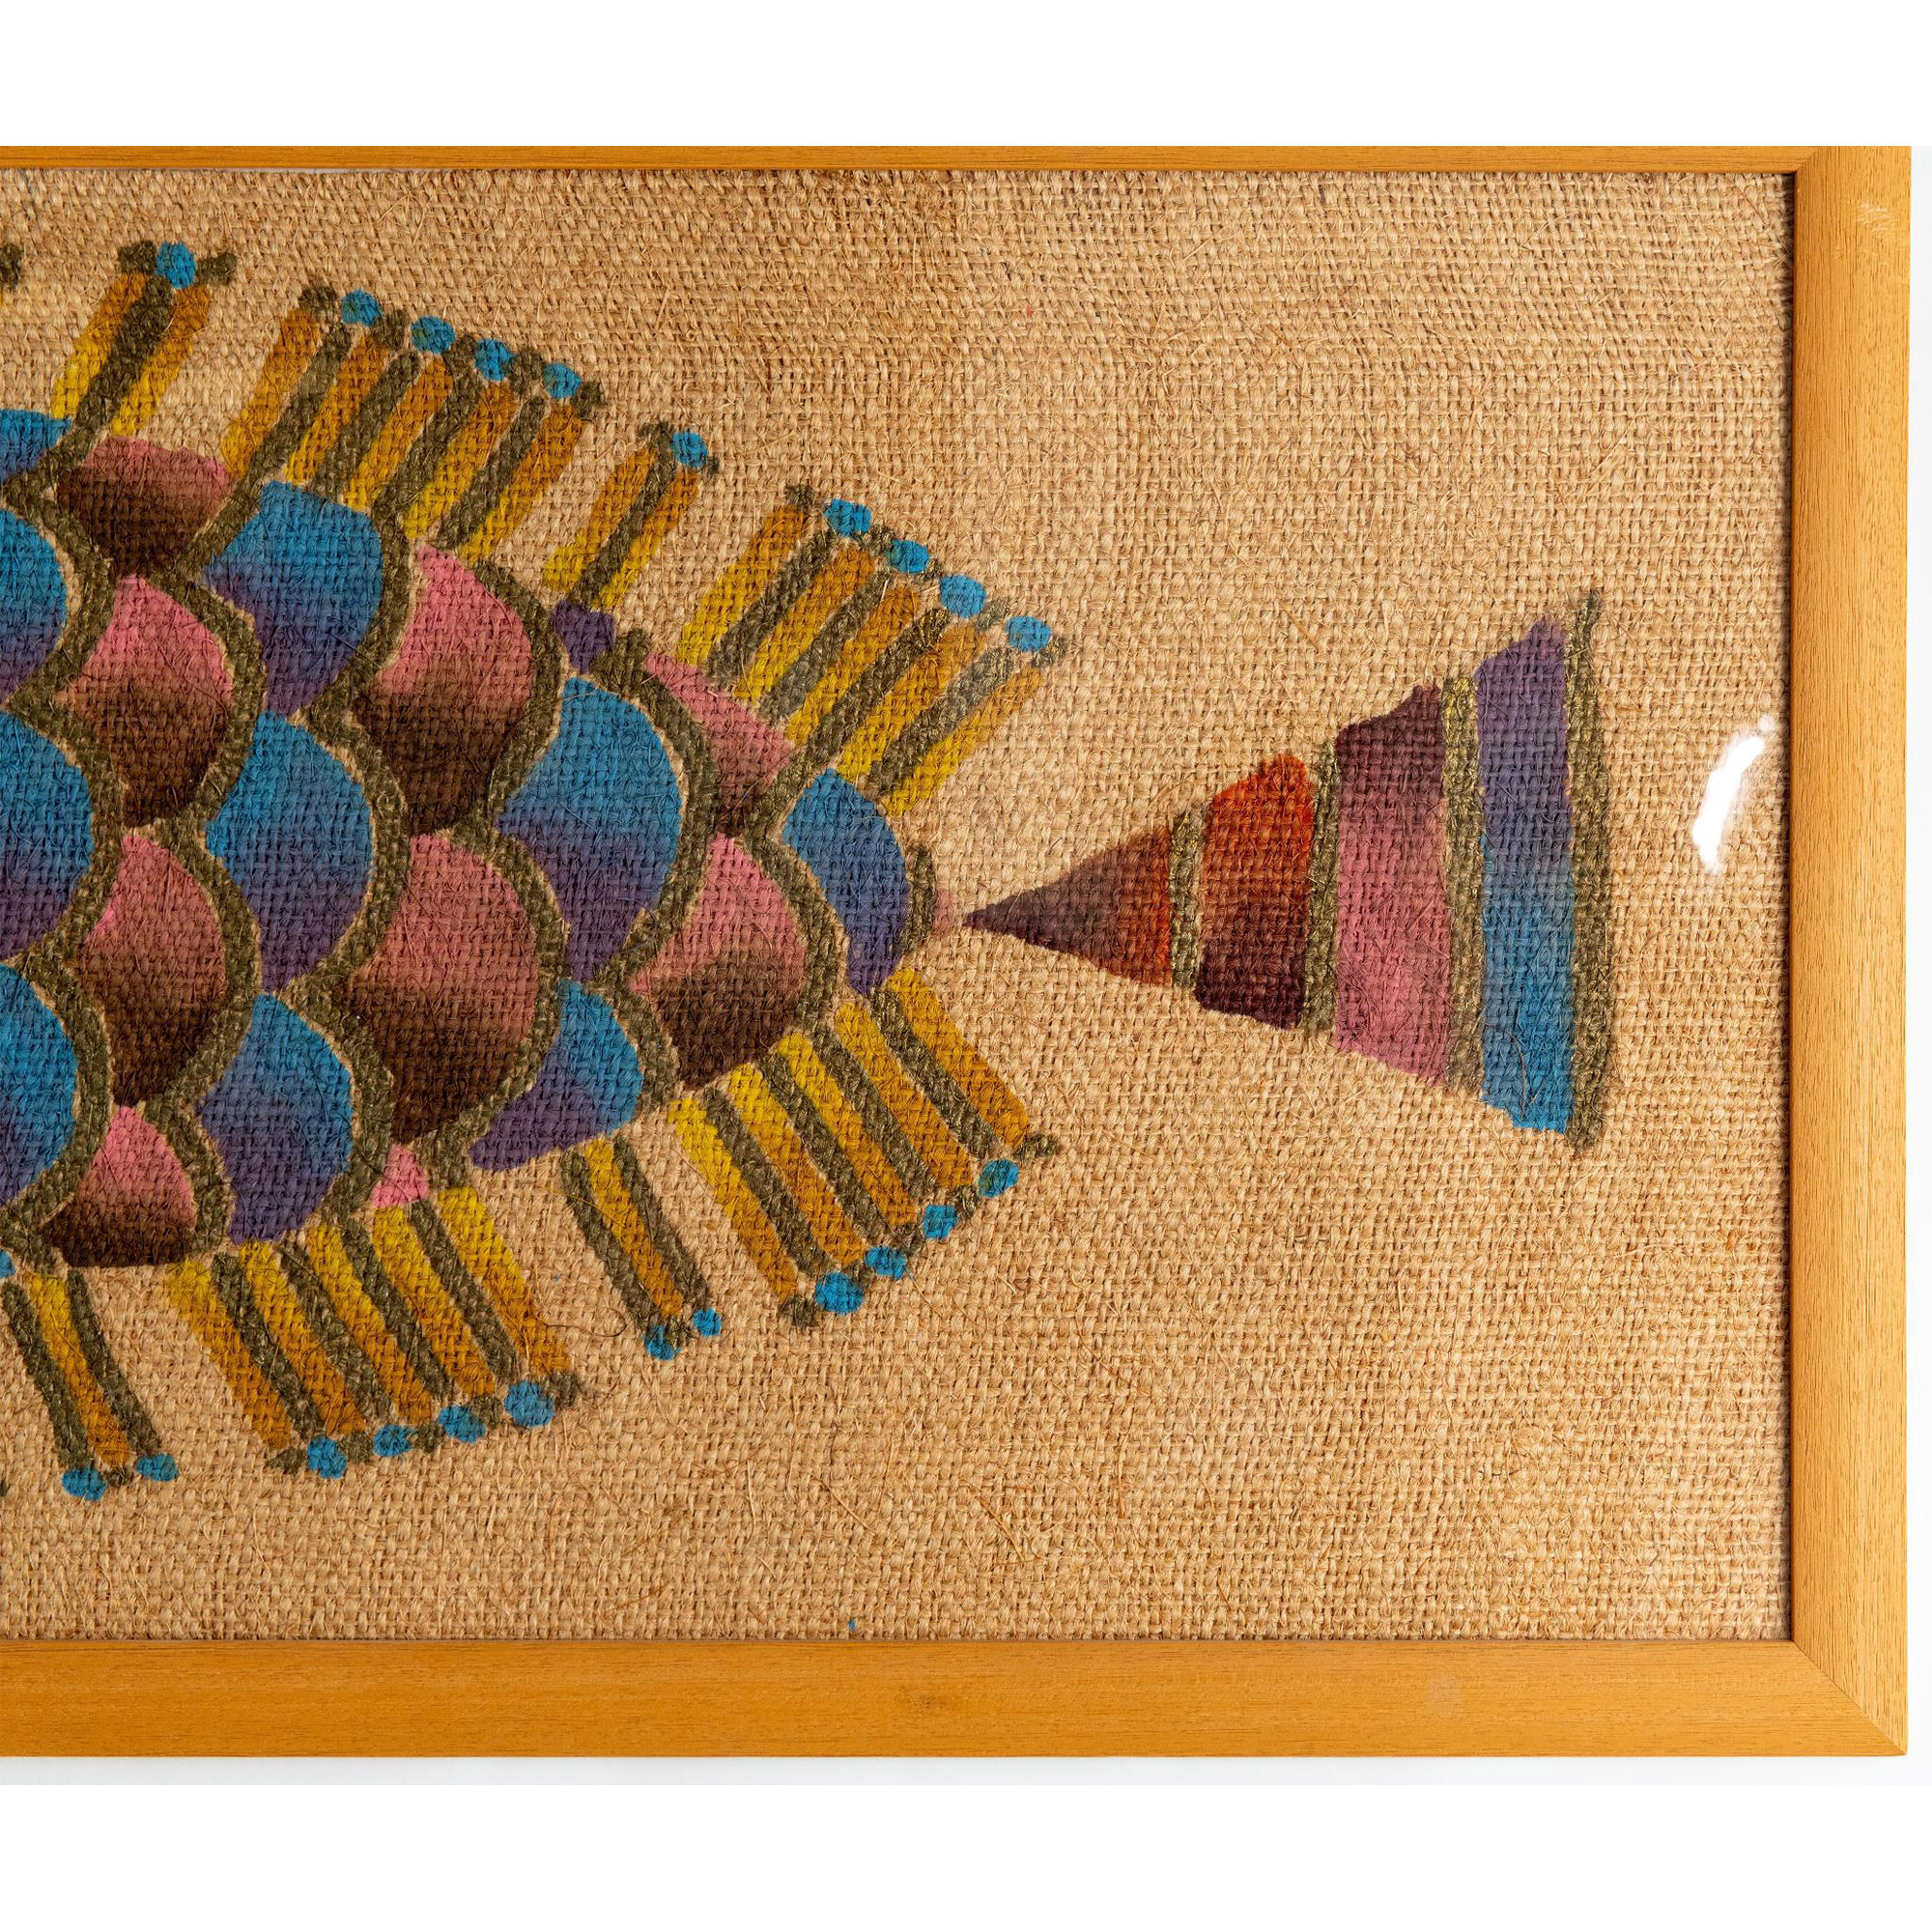 Large Original Acrylic on Thick Burlap, Whimsical Fish - Image 3 of 5